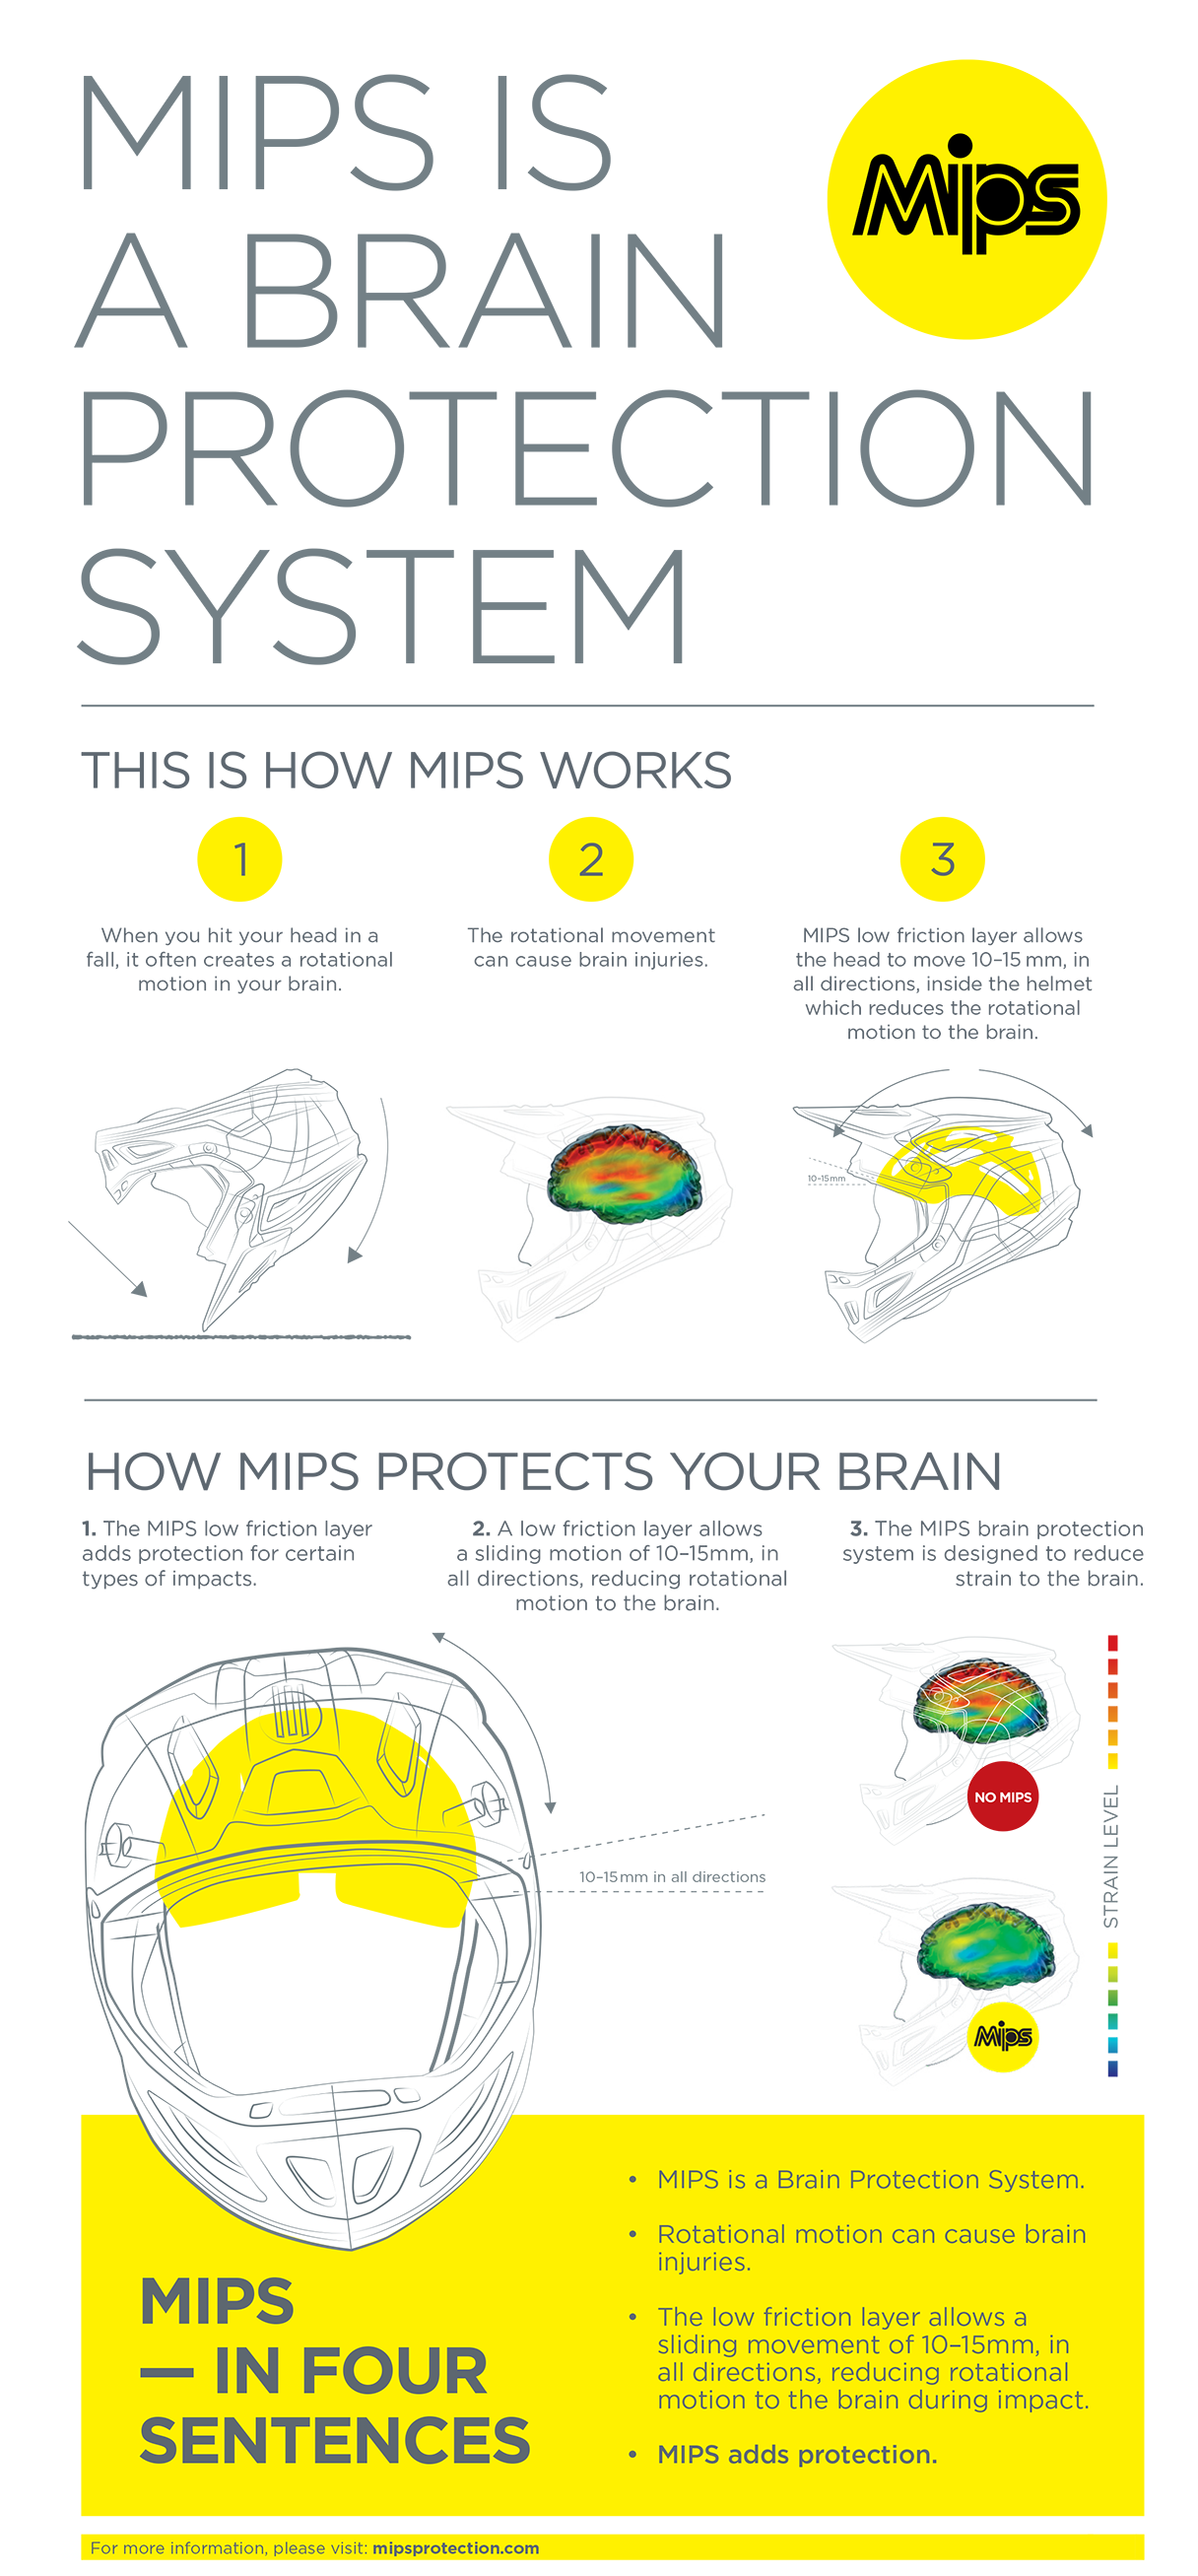 ALPINESTARS Supertech M8 Helmet - MIPS - Gloss White - XL 8300719-2180-XL